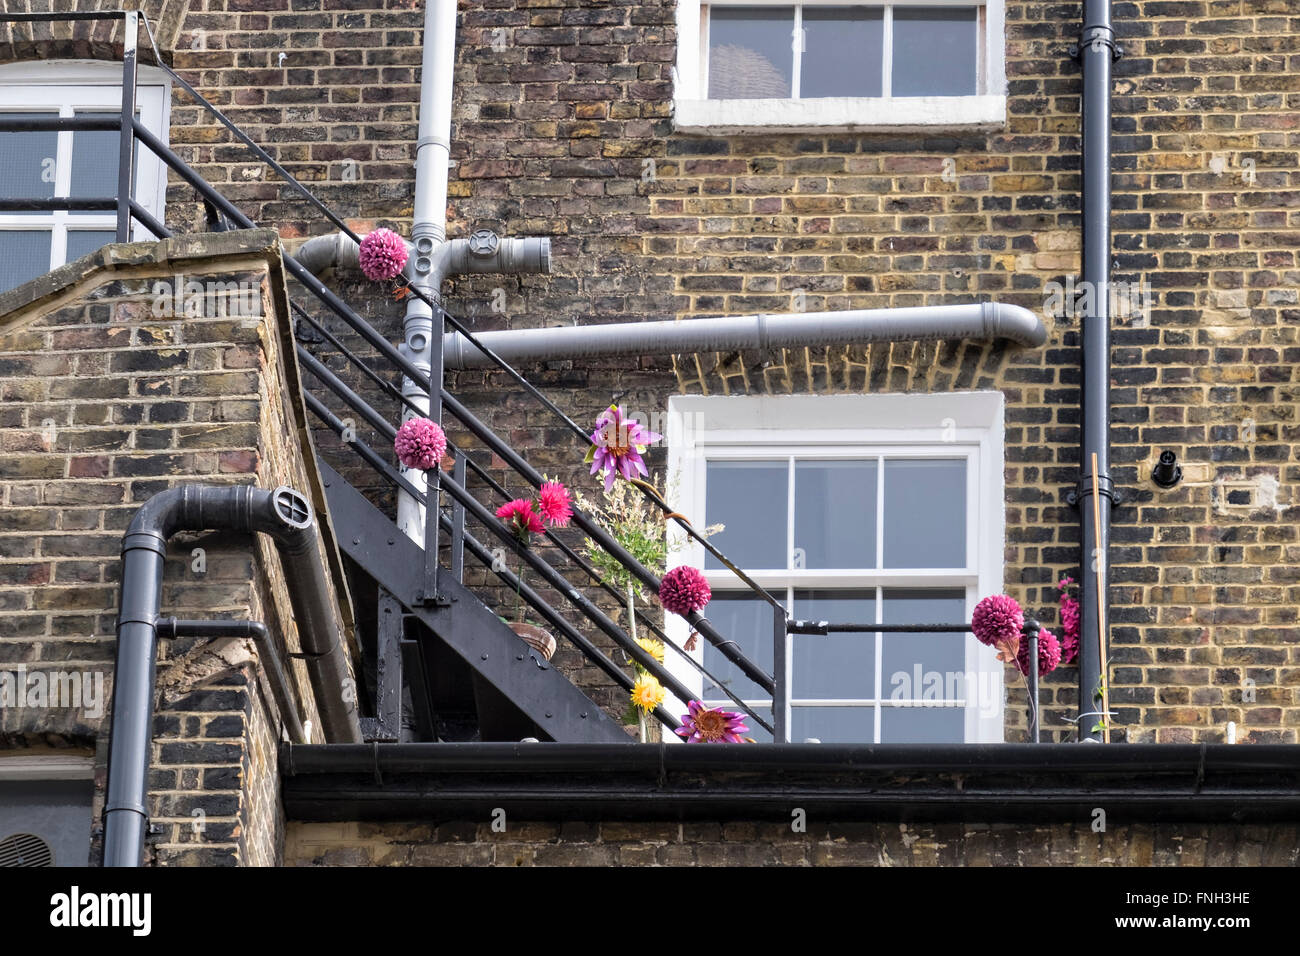 Le printemps est là - fire escape garde-corps de bâtiment décoré avec des fleurs coupées, Londres, Greenwich Banque D'Images